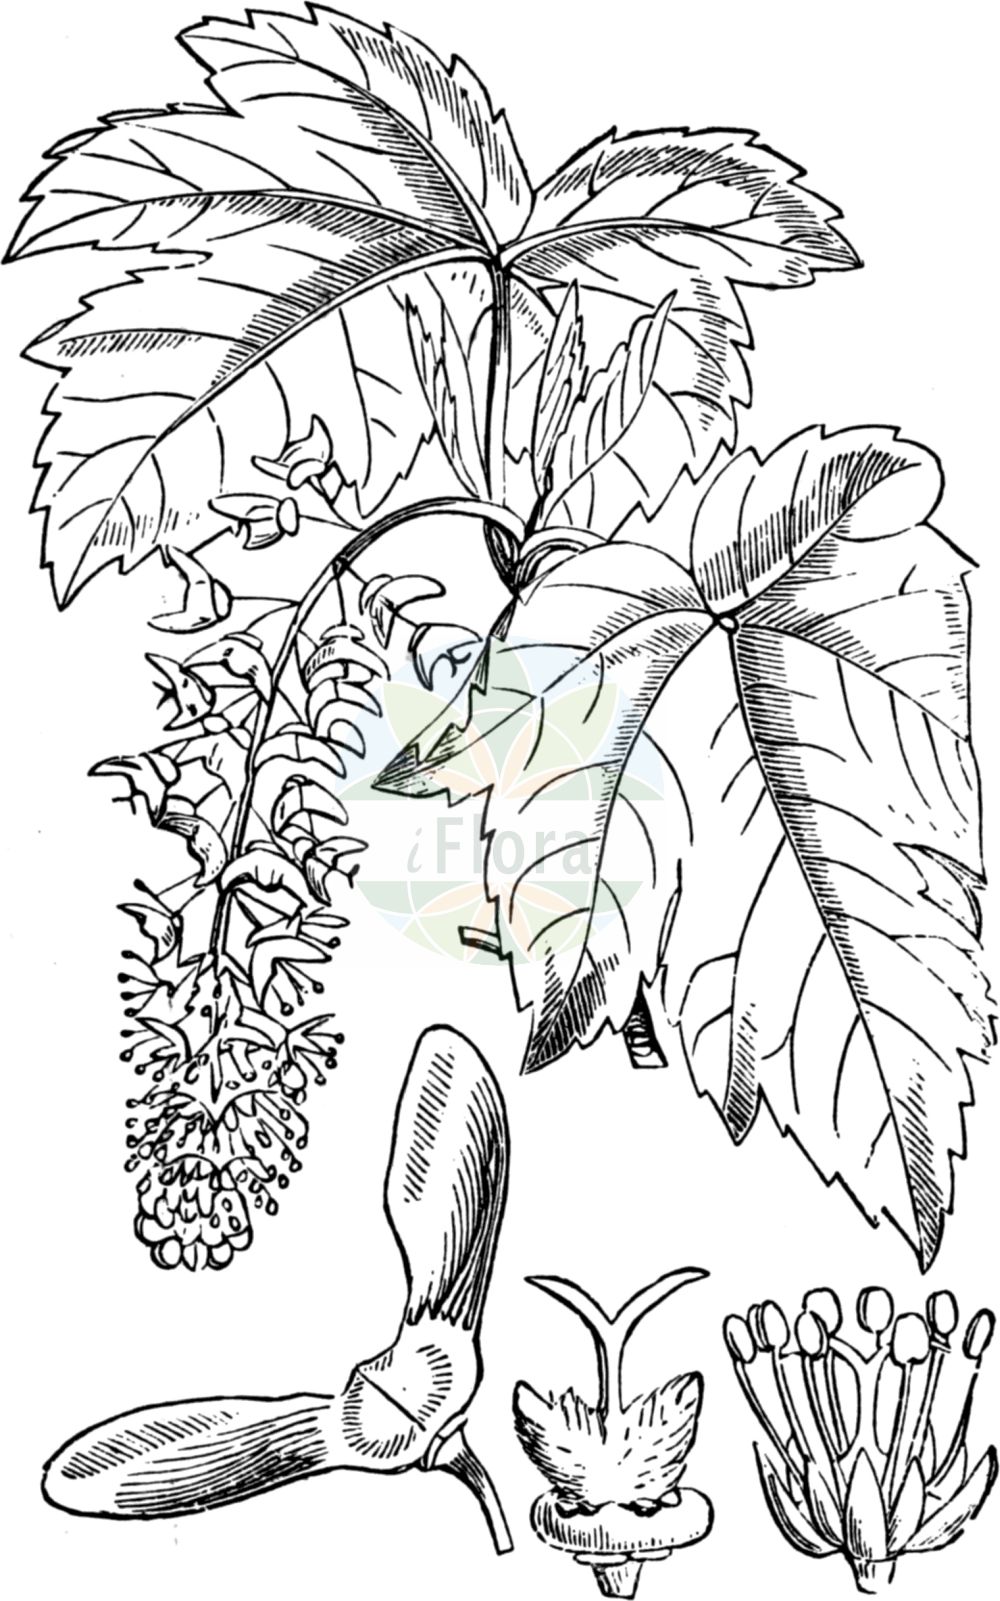 Historische Abbildung von Acer pseudoplatanus (Berg-Ahorn - Sycamore). Das Bild zeigt Blatt, Bluete, Frucht und Same. ---- Historical Drawing of Acer pseudoplatanus (Berg-Ahorn - Sycamore). The image is showing leaf, flower, fruit and seed.(Acer pseudoplatanus,Berg-Ahorn,Sycamore,Acer pseudoplatanus,Acer quinquelobum,Acer villosum,Berg-Ahorn,Trauben-Ahorn,Wald-Ahorn,Weiss-Ahorn,Sycamore,Common Sycamore,Sycamore Maple,Great Maple,Plane Maple,Acer,Ahorn,Maple,Sapindaceae,Seifenbaumgewächse,Soapberry family,Blatt,Bluete,Frucht,Same,leaf,flower,fruit,seed,Fitch et al. (1880))